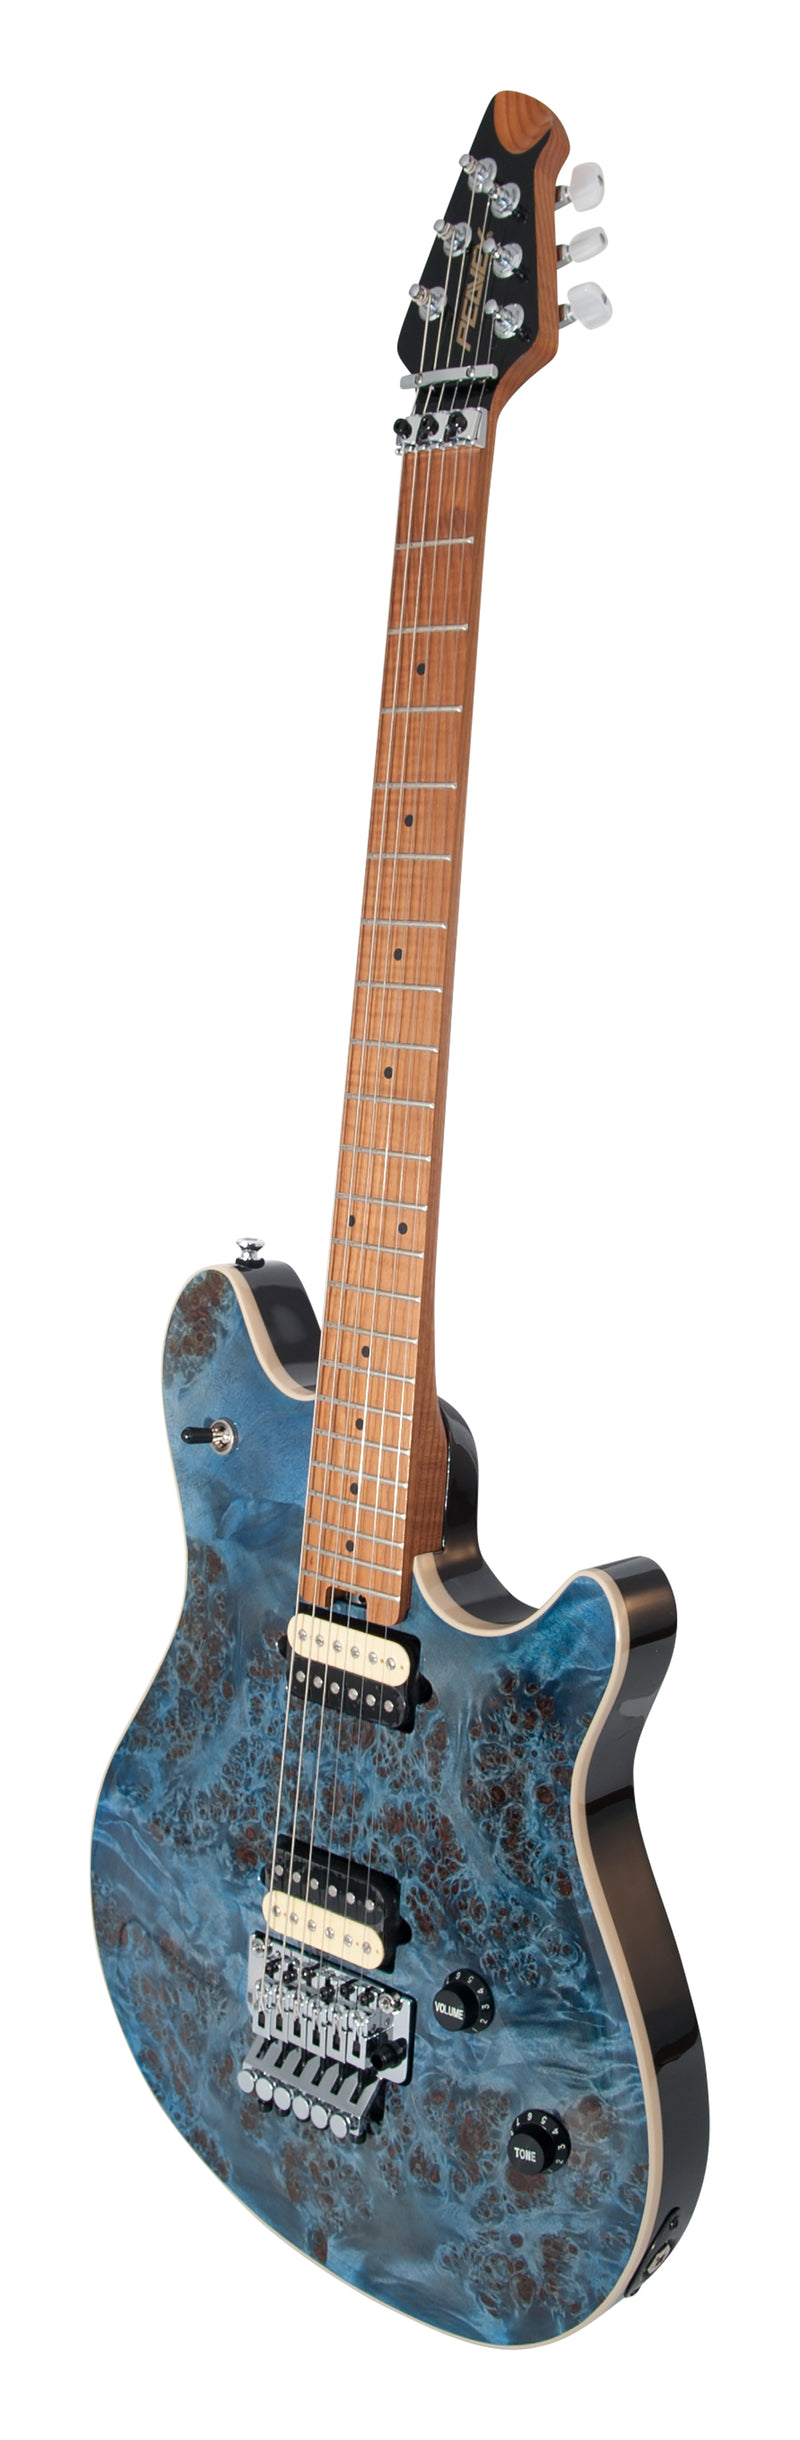 Guitare électrique Peavey HP-2 avec un Tremolo Floyd Rose sous licence de Peavey (bleu transparent)